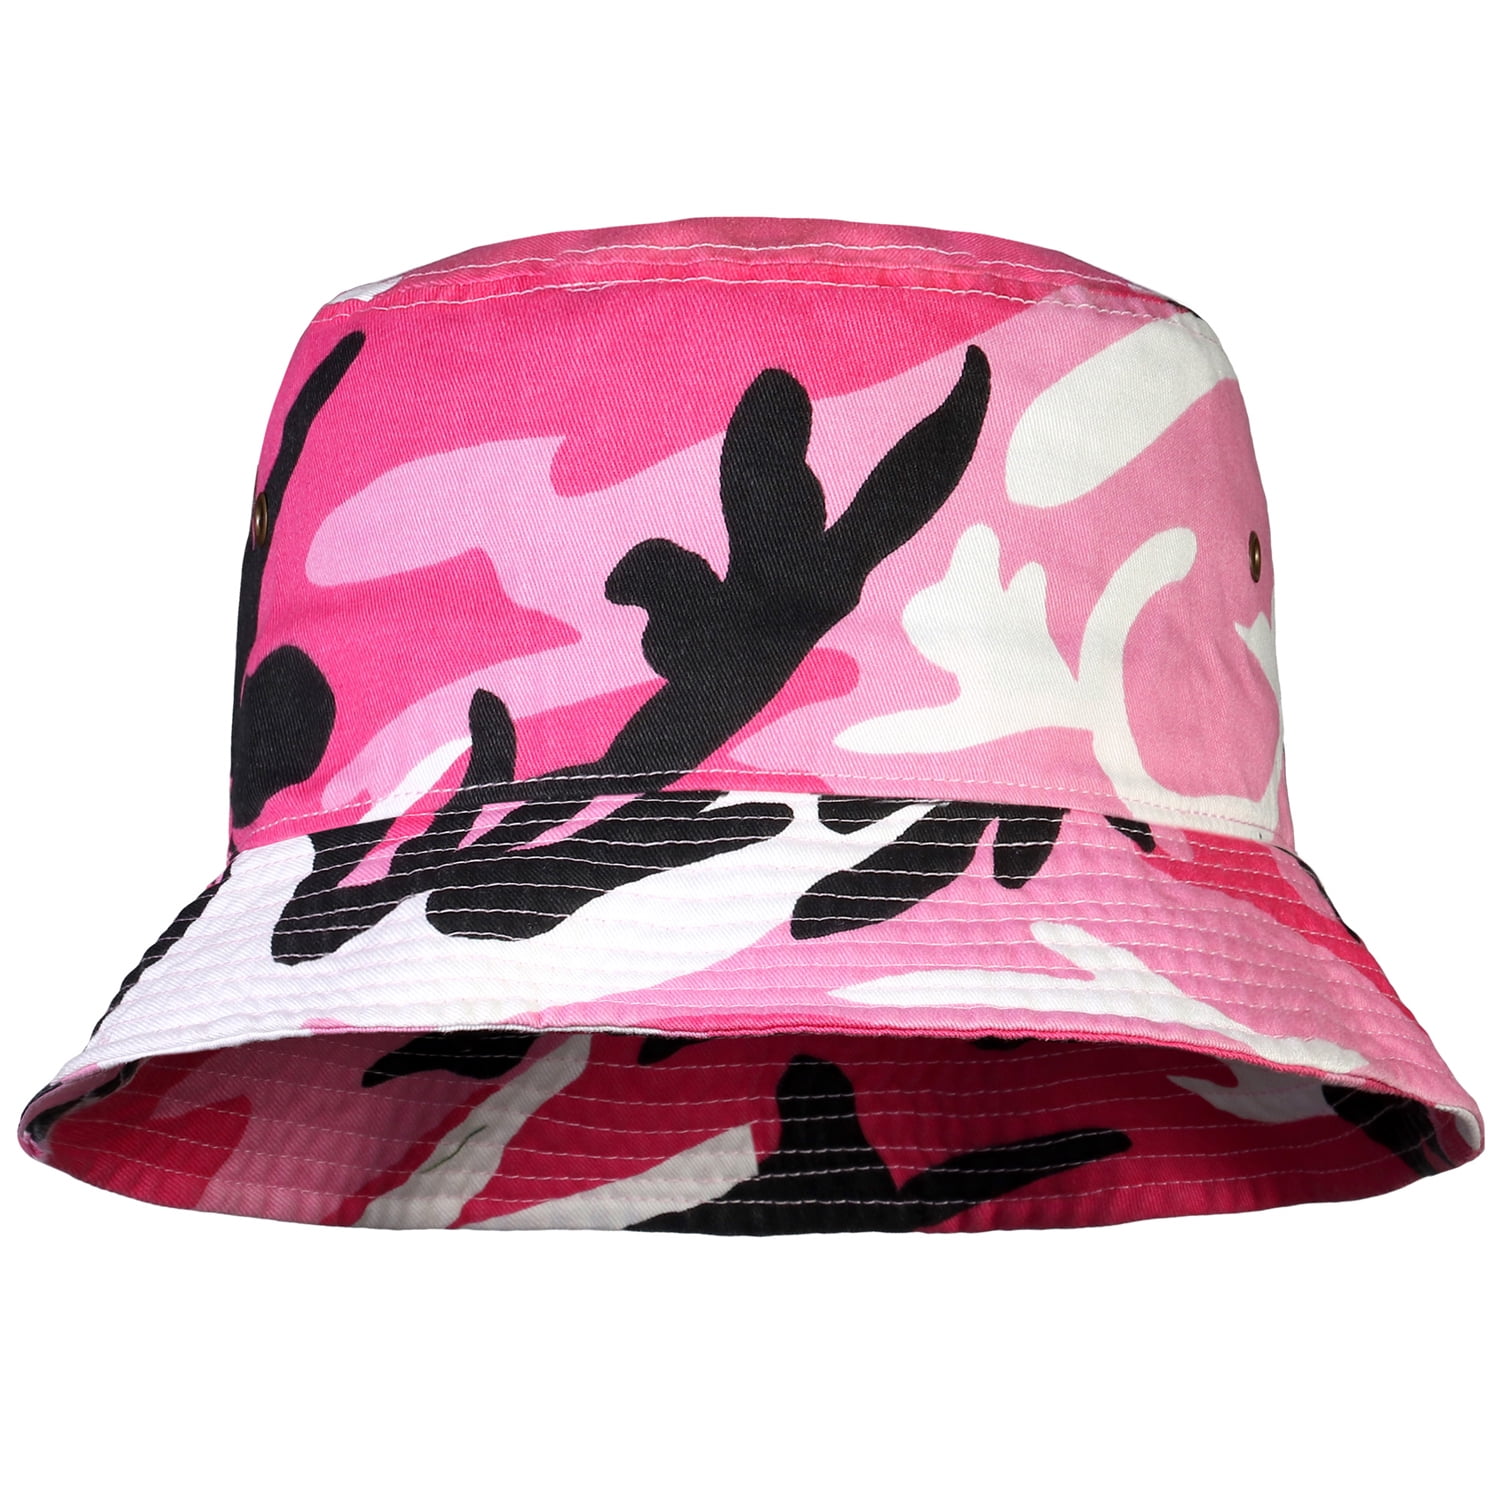 Bucket Hat for Men Women Unisex 100% Cotton Packable Foldable Summer ...